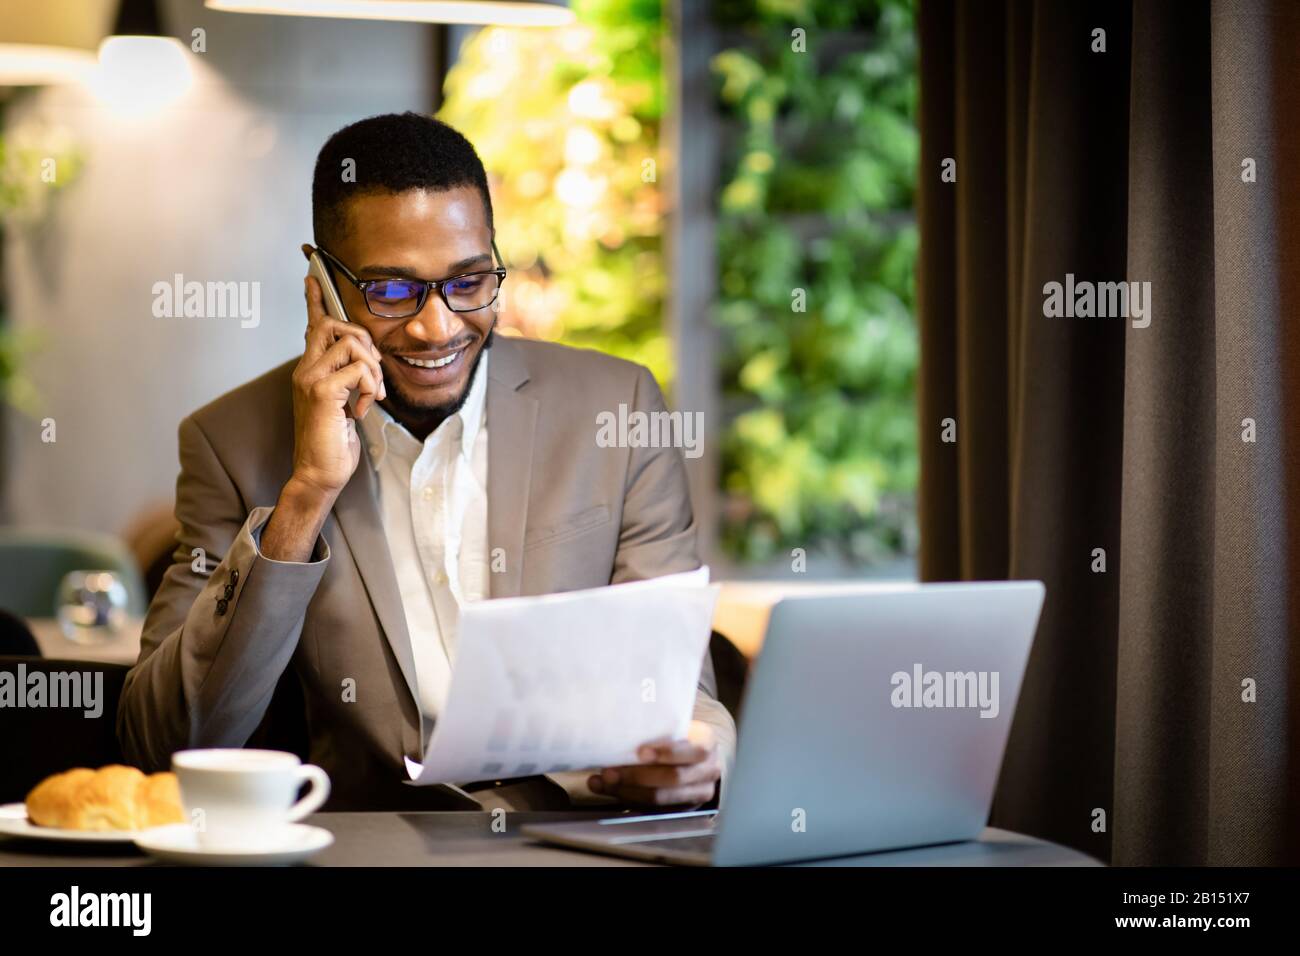 Portrait d'un homme d'affaires noir faisant un appel téléphonique Banque D'Images